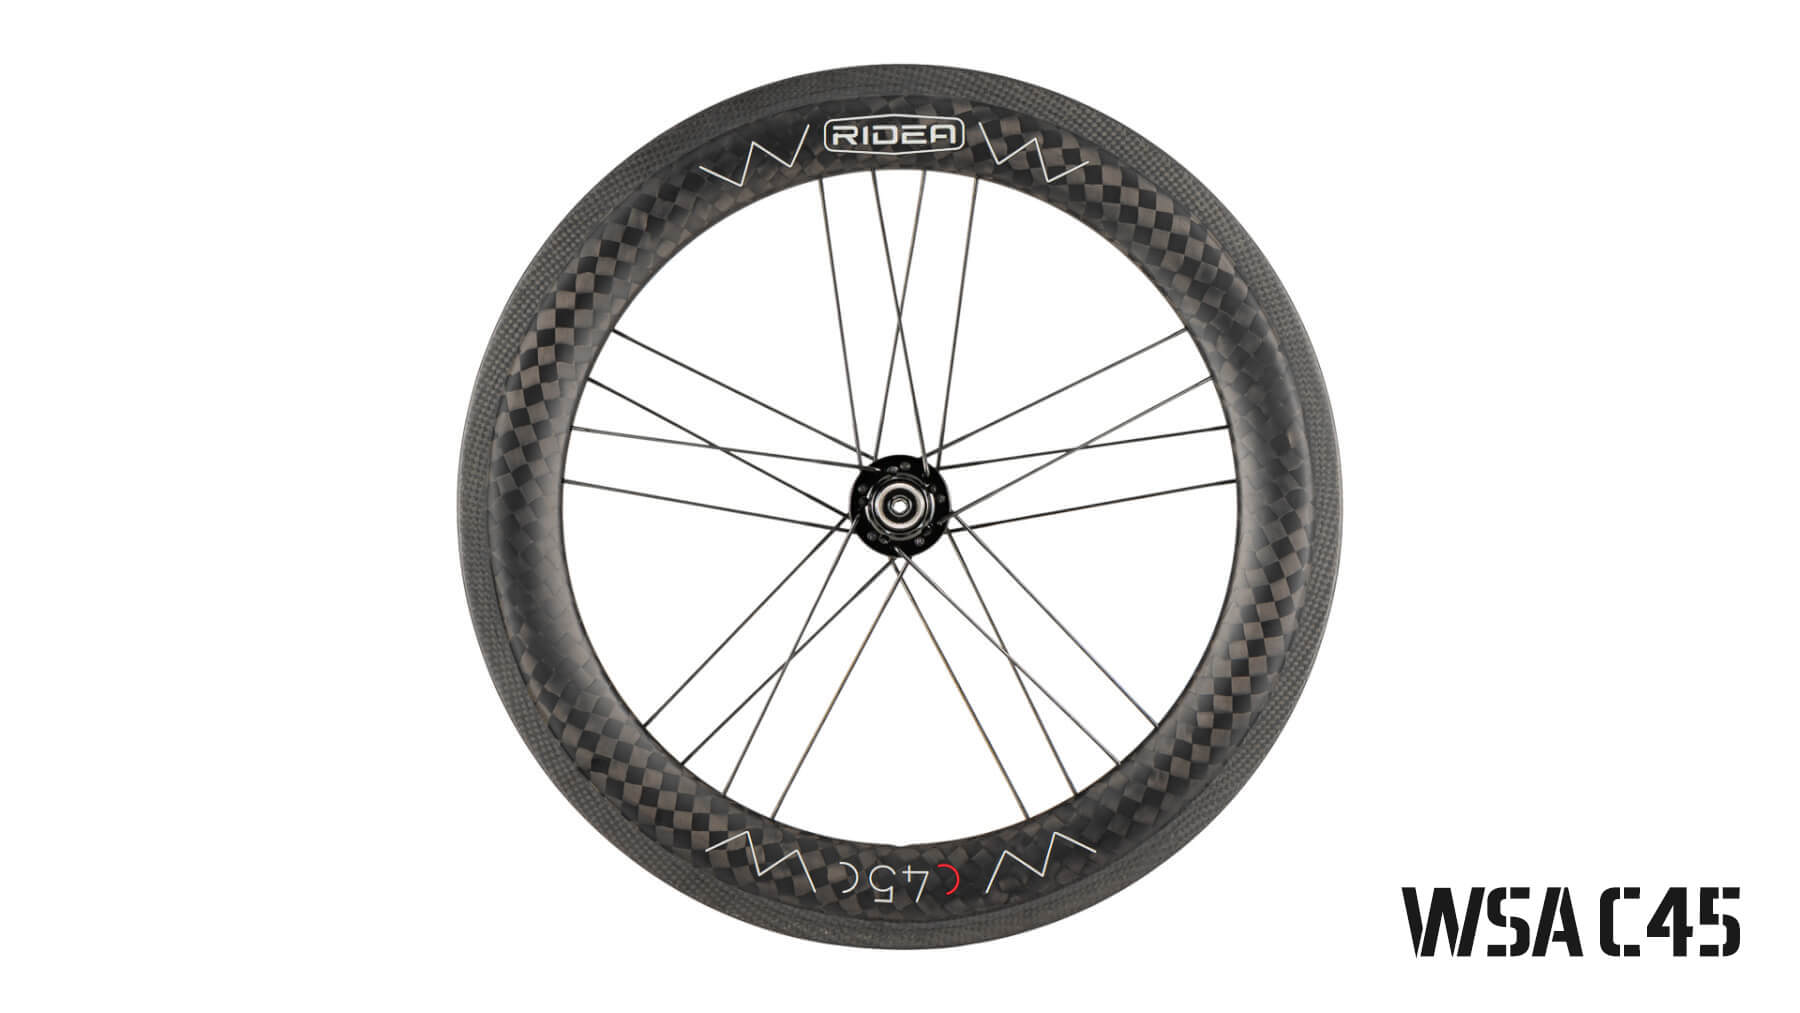 369 mm carbon wheels (Moulton)